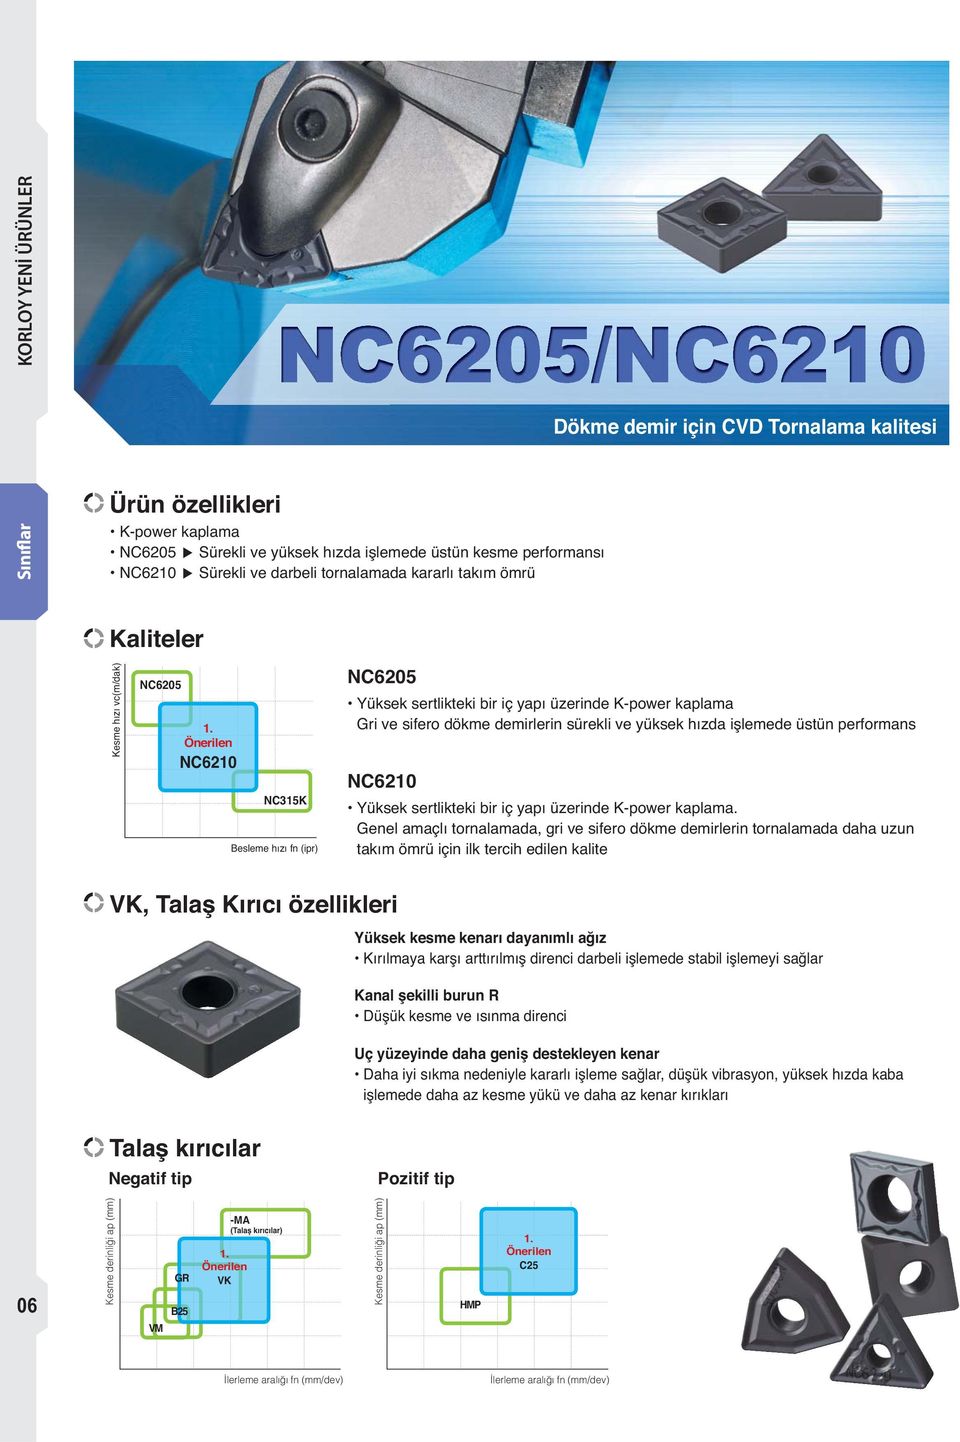 Önerilen NC6210 NC315K Besleme hızı fn (ipr) NC6205 Yüksek sertlikteki bir iç yapı üzerinde K-power kaplama Gri ve sifero dökme demirlerin sürekli ve yüksek hızda işlemede üstün performans NC6210